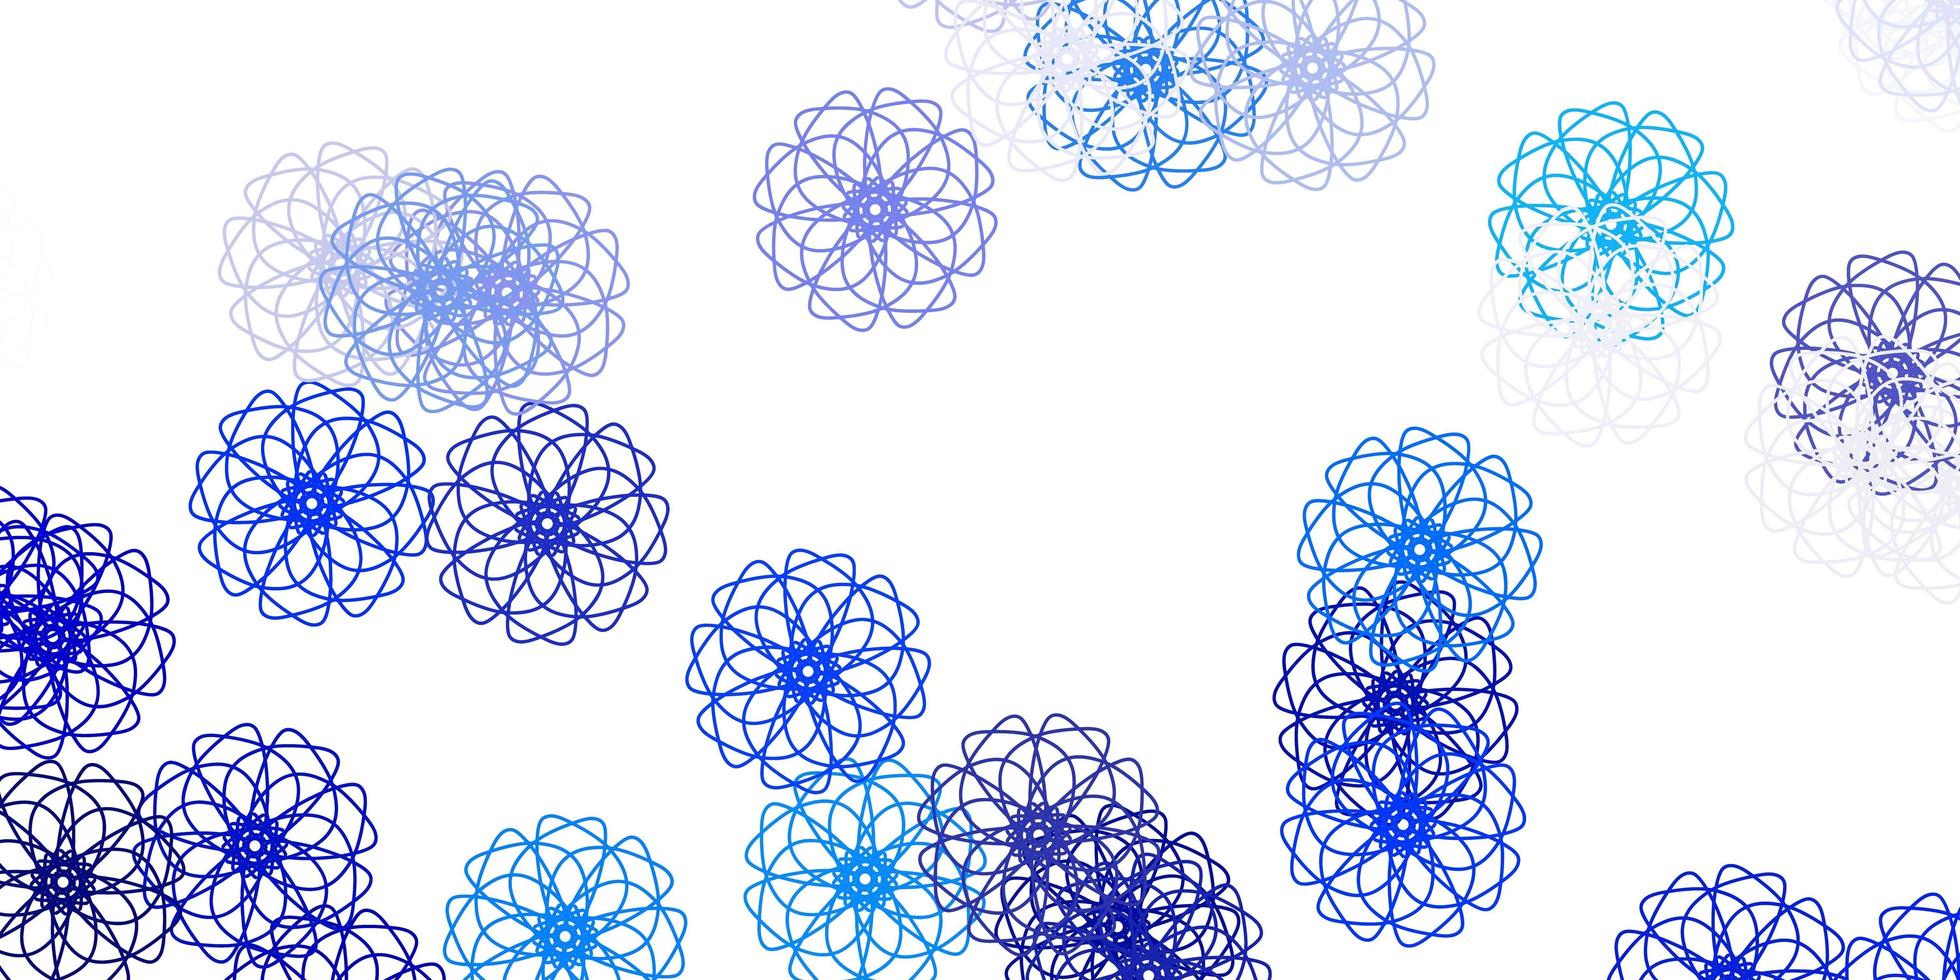 textura de doodle de vector azul claro con flores.